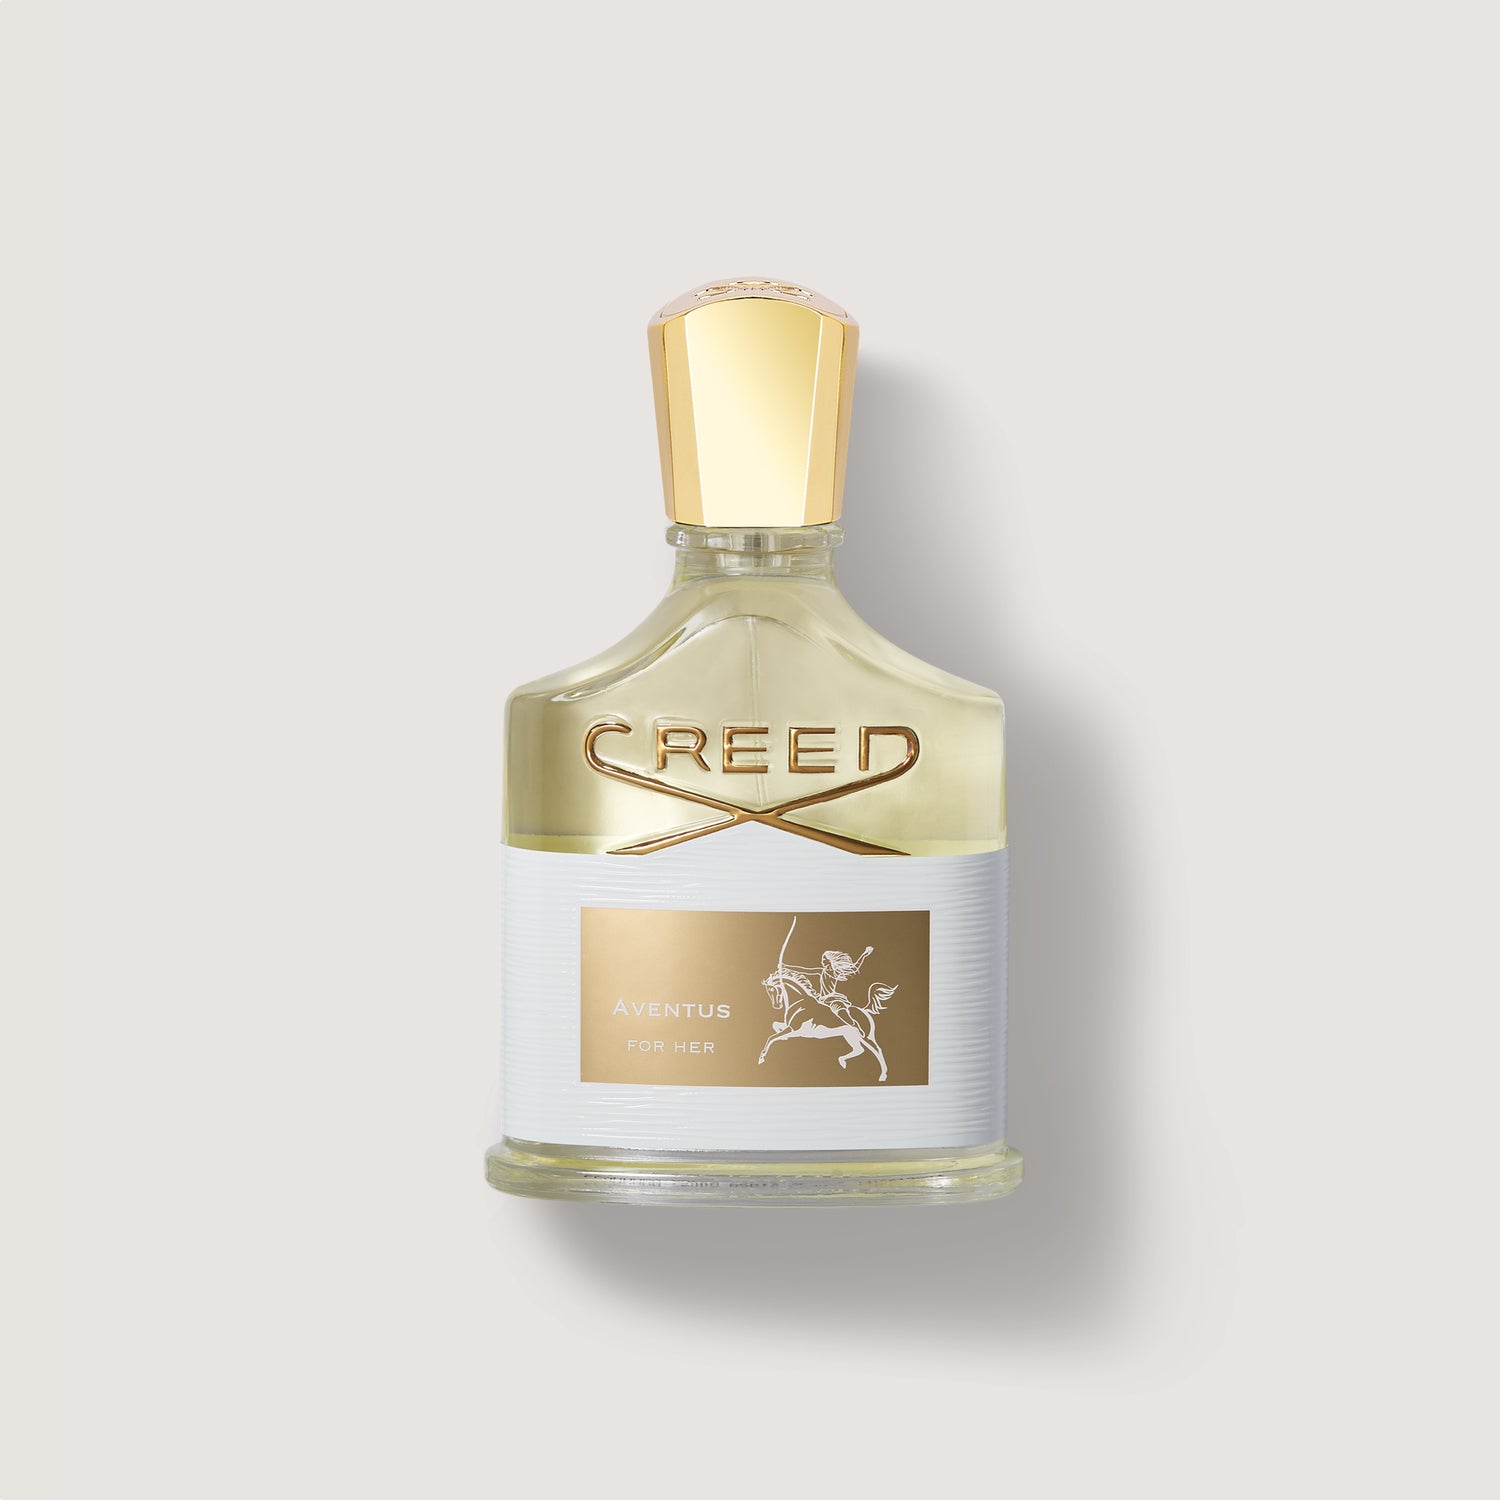 Creed Aventus Eau De Parfum Spray for Women - 2.5 oz bottle